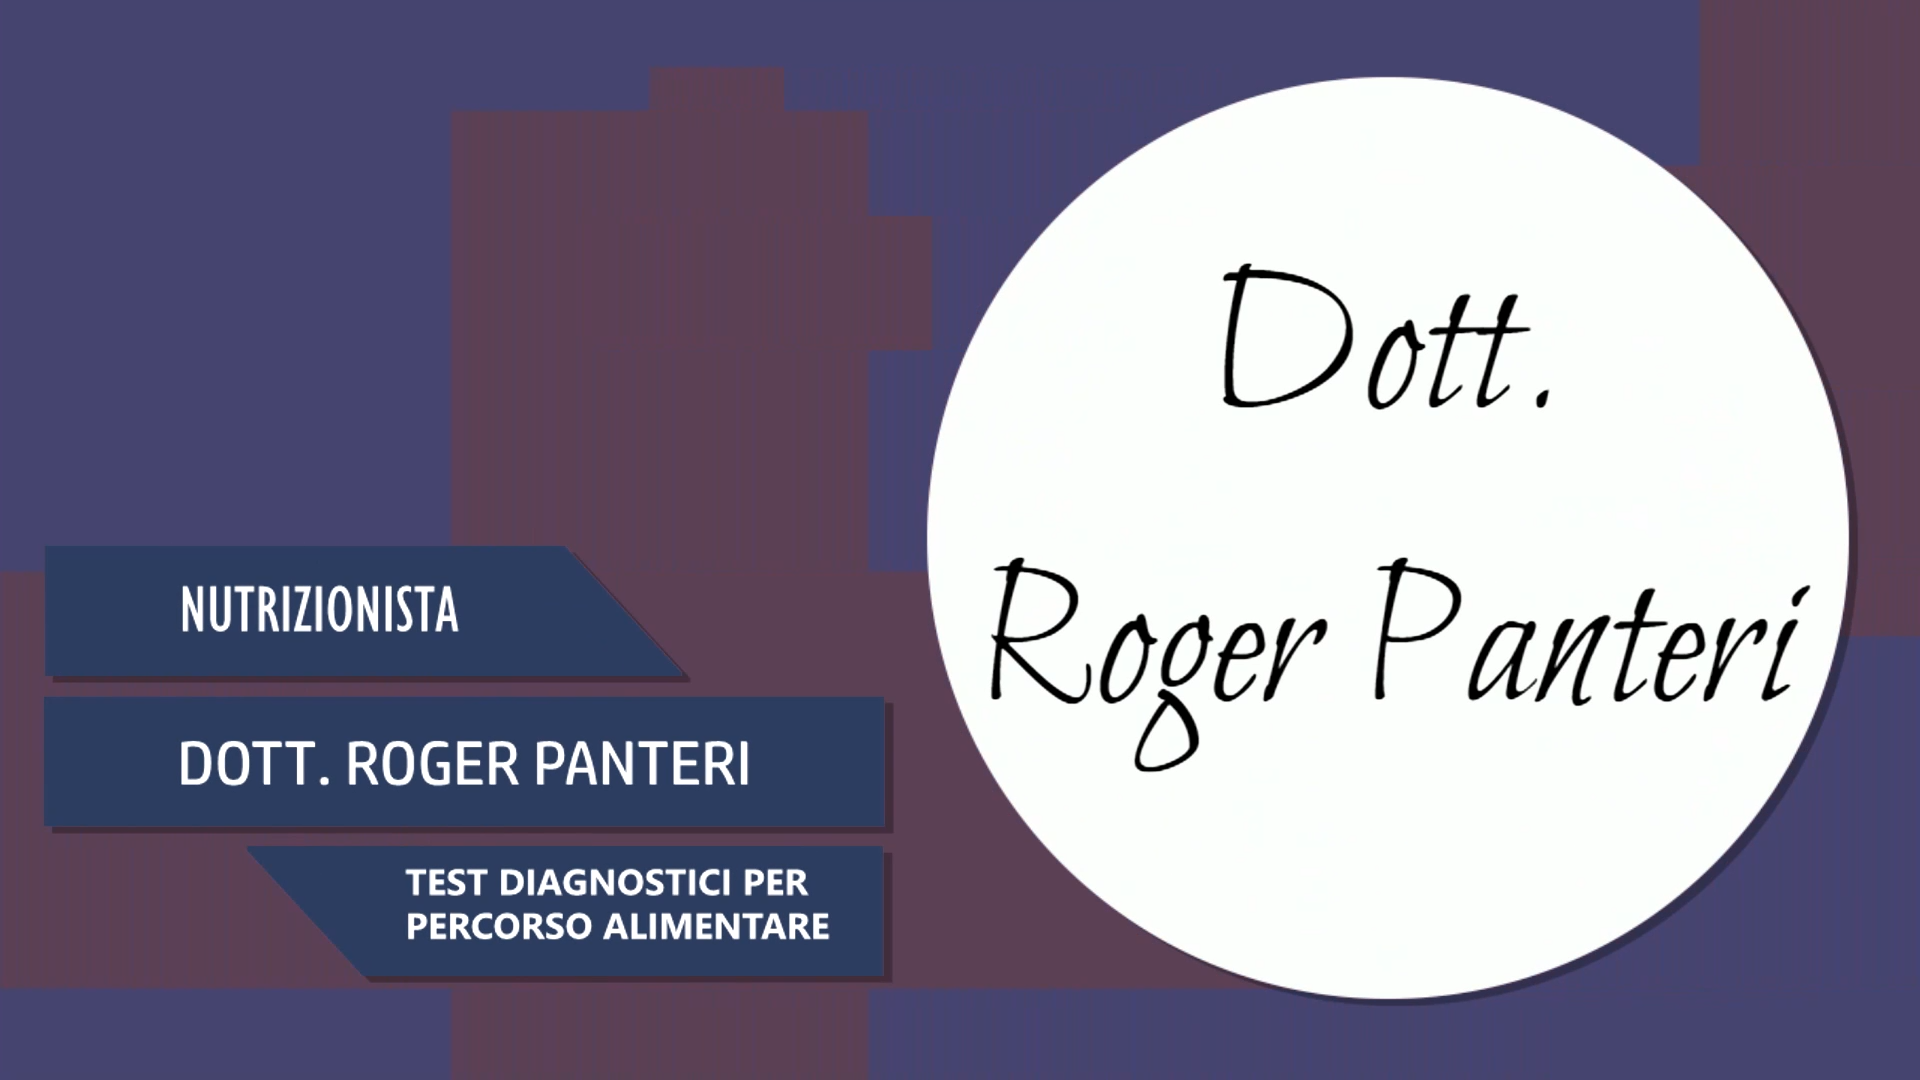 Intervista al Dott. Roger Panteri – Test diagnostici per percorso alimentare